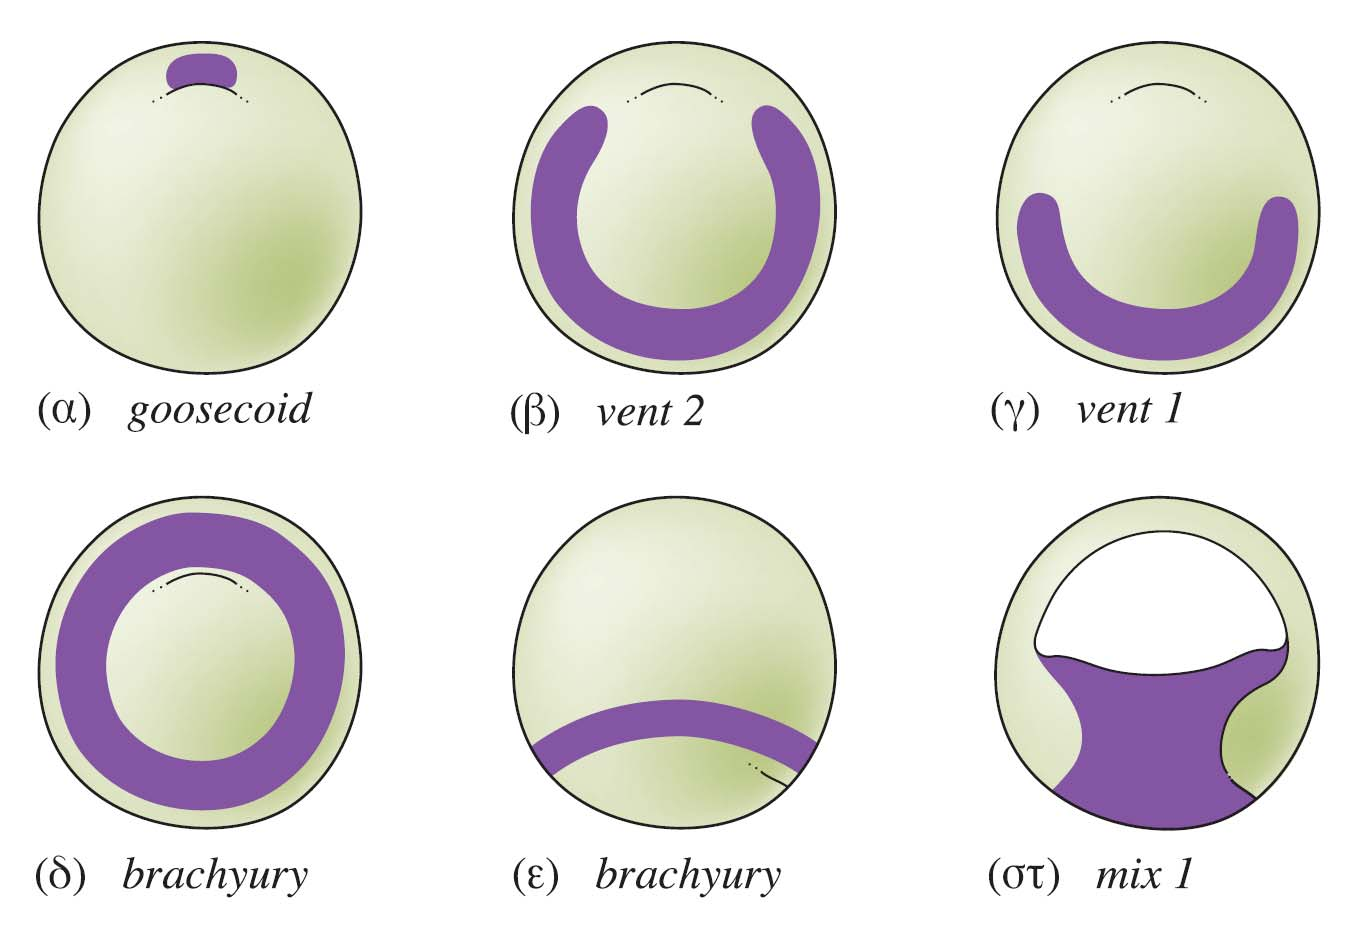 Ο σχηματισμός του ενδοδέρματος ο προκαθορισμός των κυττάρων εξαρτάται από το μεταγραφικό παράγοντα VegT και το παρακρινή παράγοντα Vg1, που είναι μητρικής προέλευσης και κατανέμονται στα